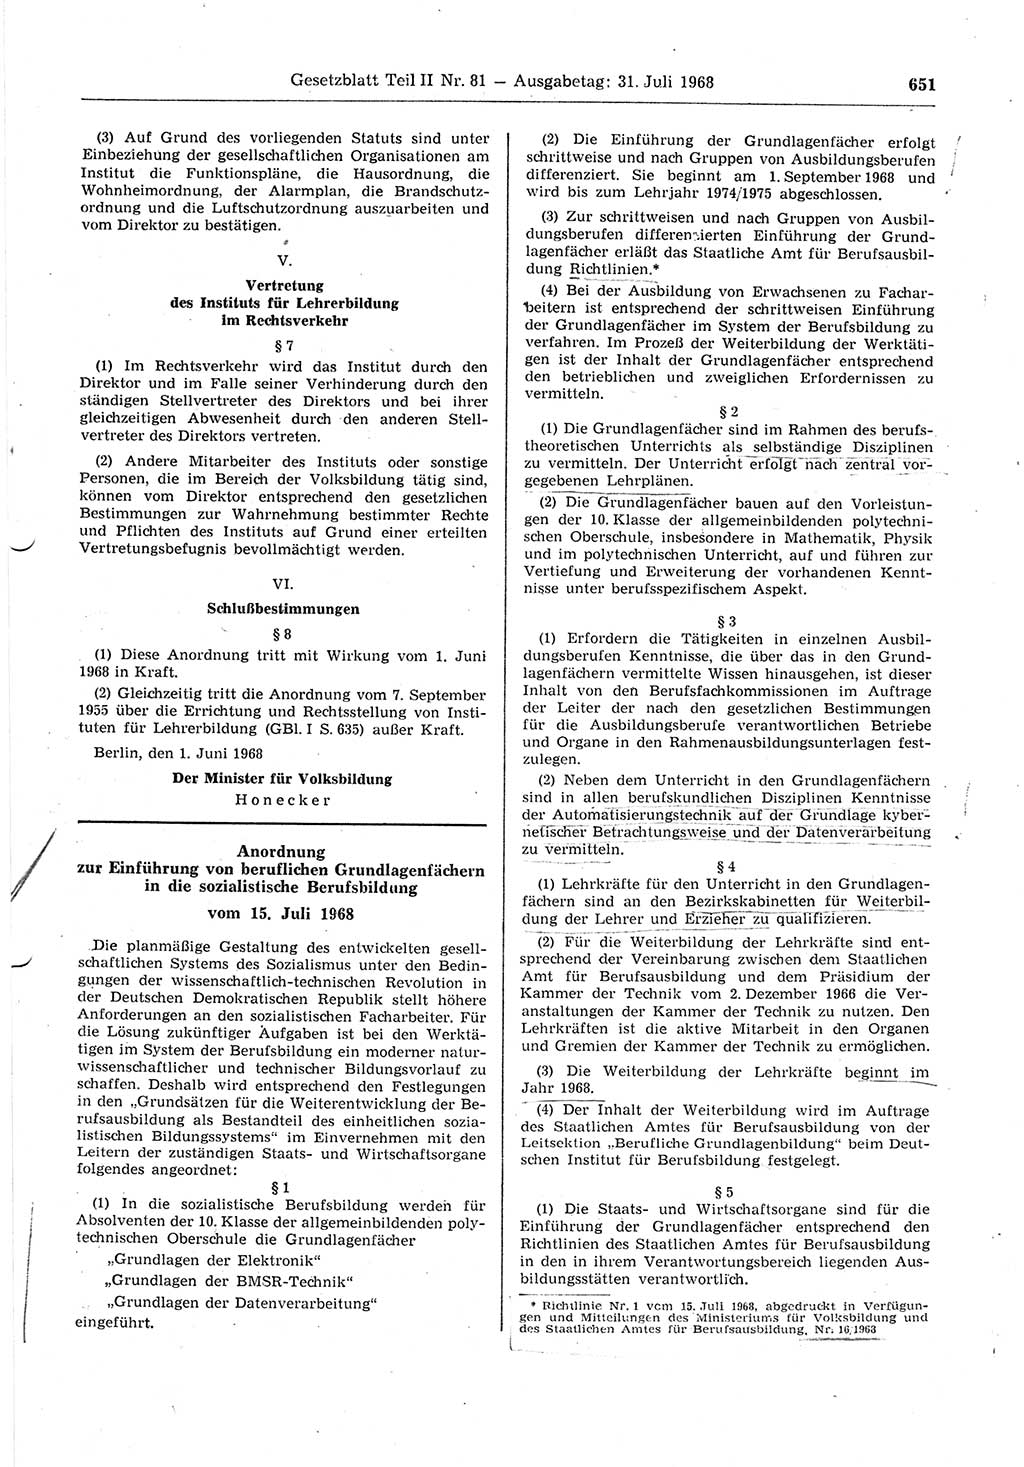 Gesetzblatt (GBl.) der Deutschen Demokratischen Republik (DDR) Teil ⅠⅠ 1968, Seite 651 (GBl. DDR ⅠⅠ 1968, S. 651)